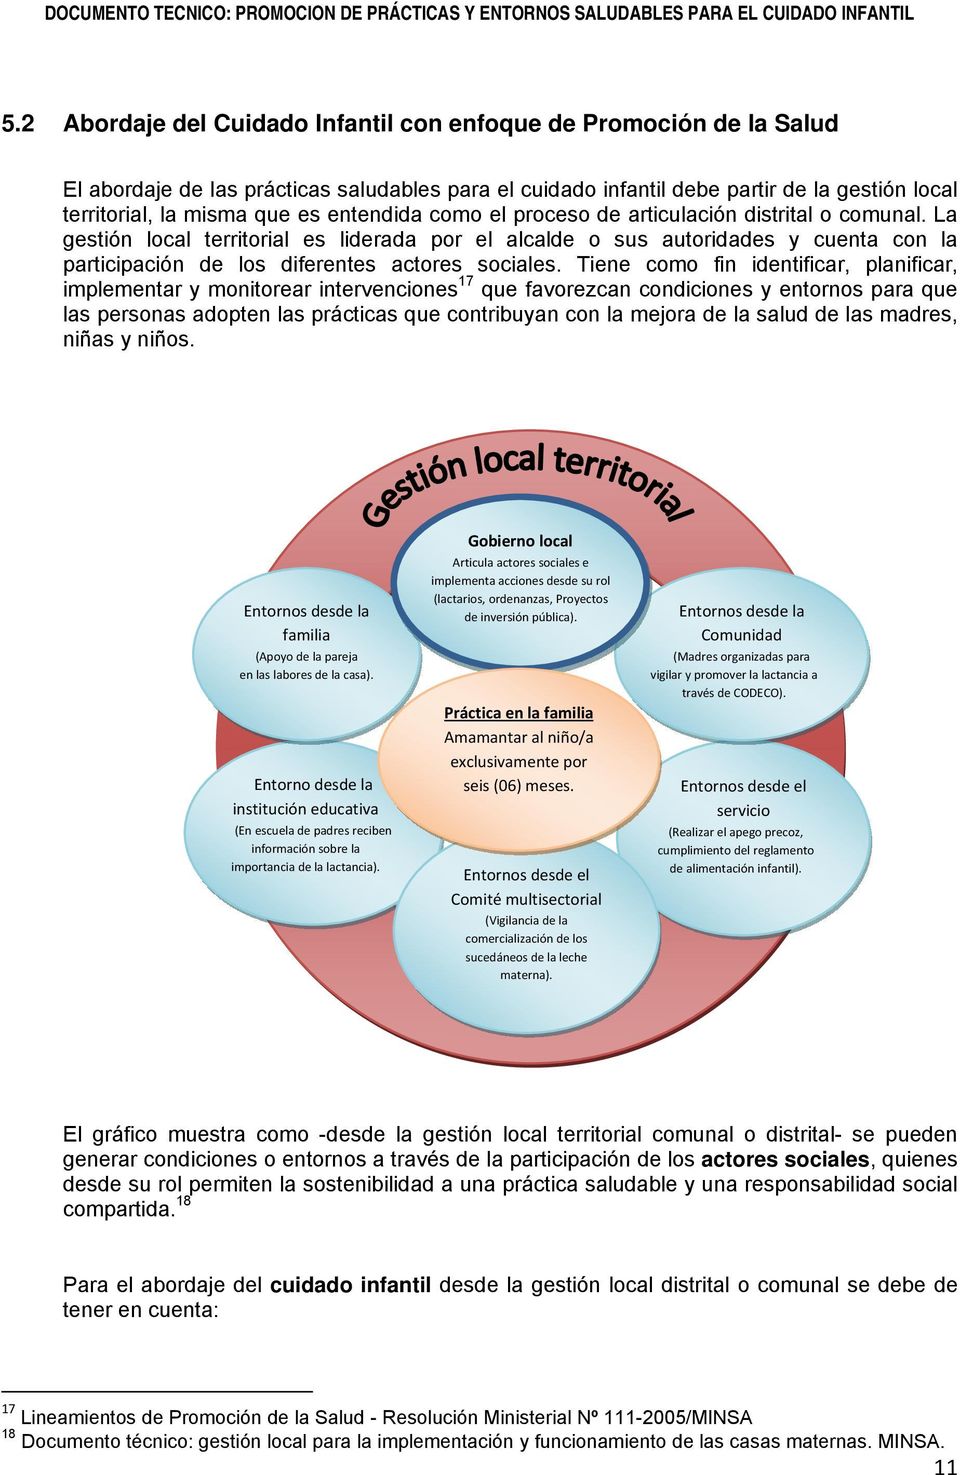 La gestión local territorial es liderada por el alcalde o sus autoridades y cuenta con la participación de los diferentes actores sociales.